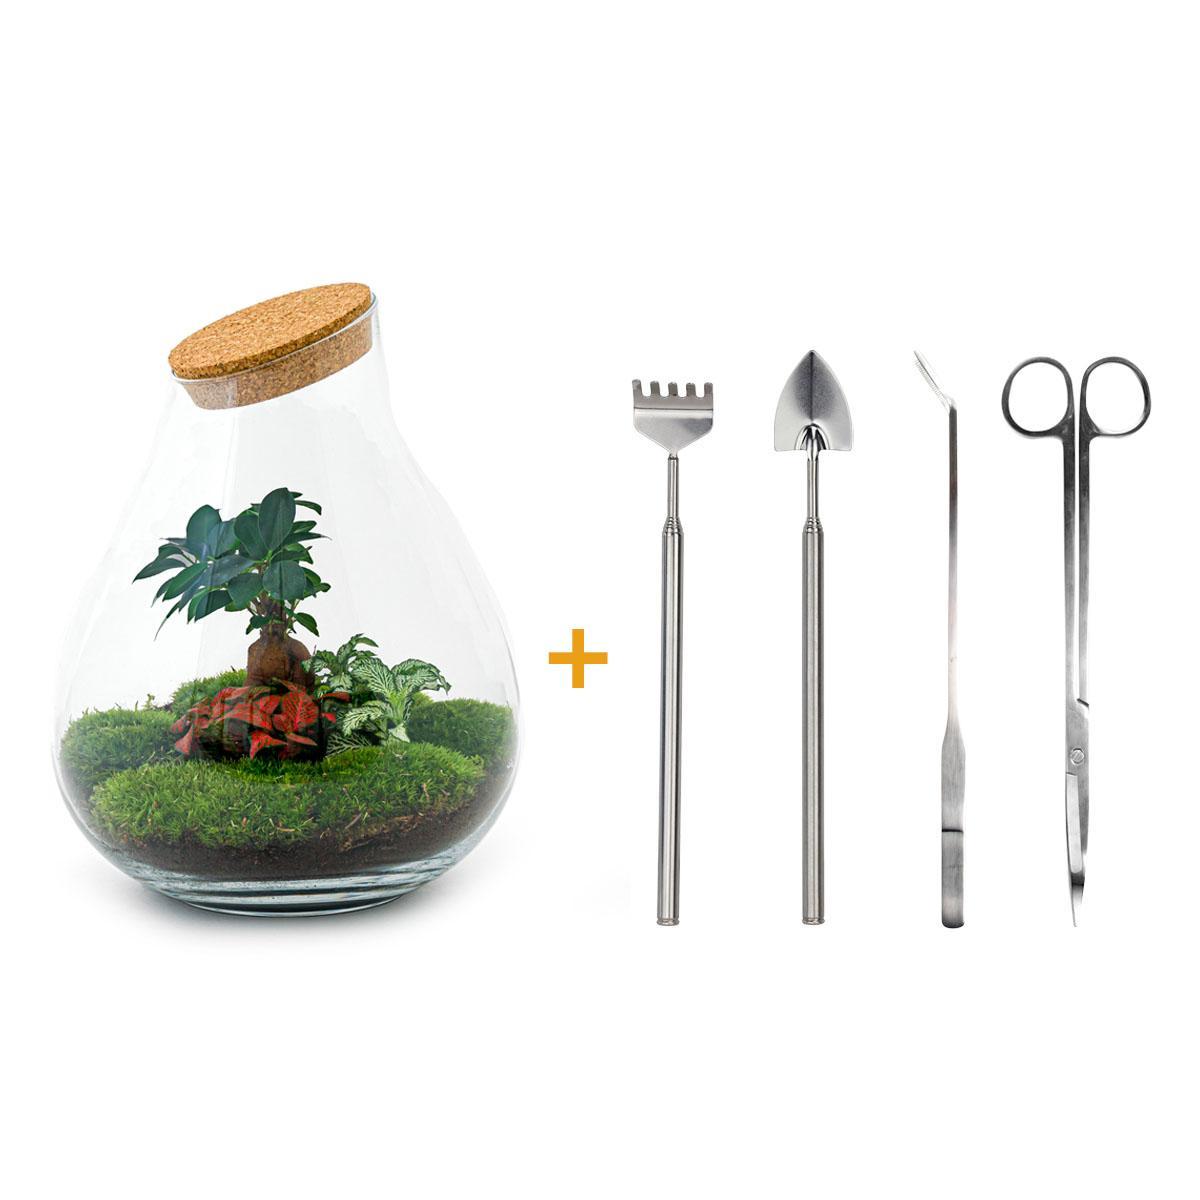 DIY terrarium - Drop XL Bonsai - ↑ 37 cm + Rake + Shovel + Tweezer + Scissors